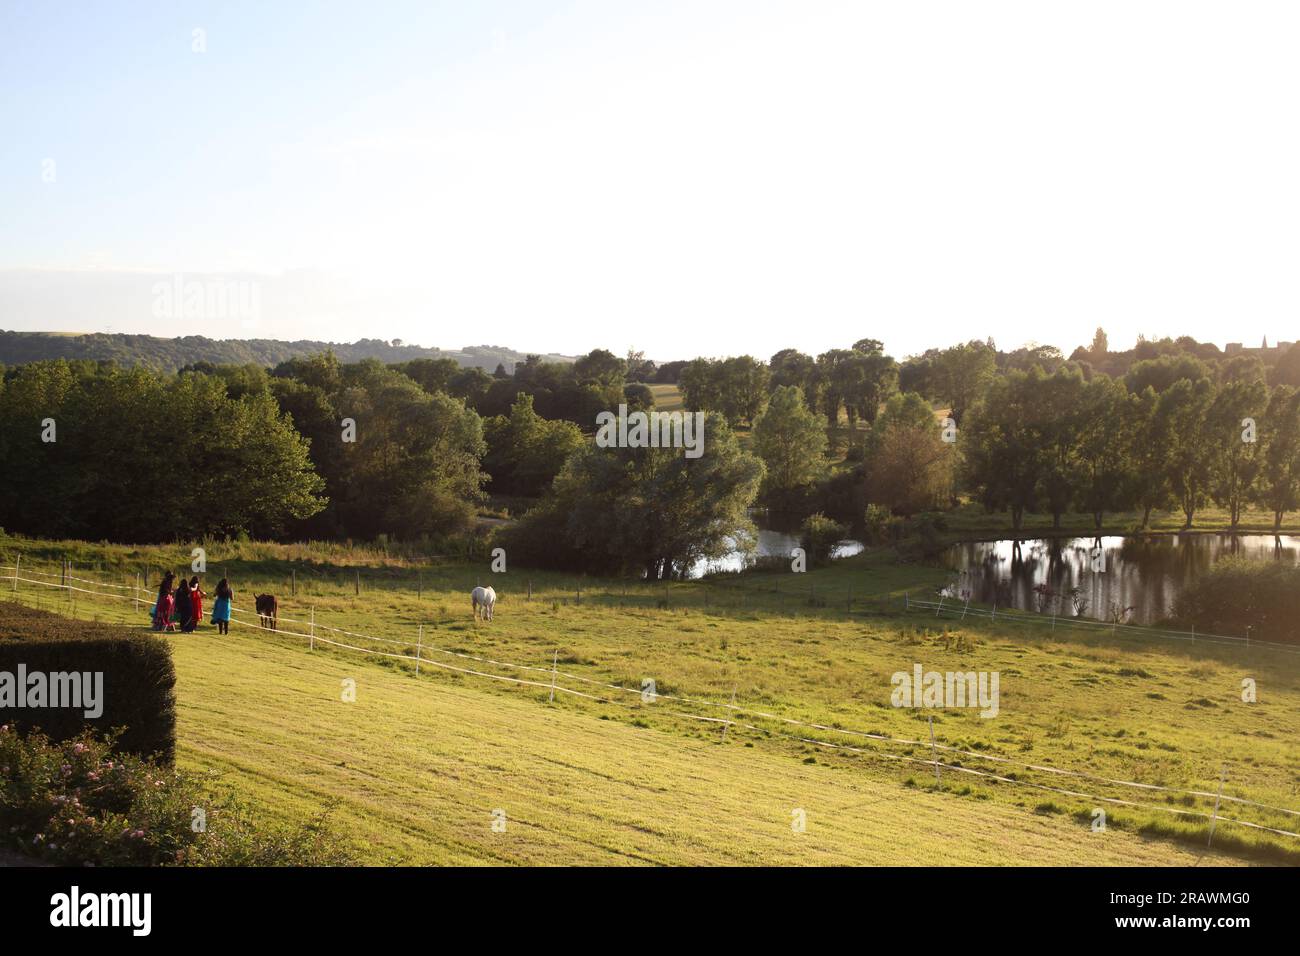 France : organisation de mariage, l'espace exterieur en pleine nature avec foret et lac Stock Photo